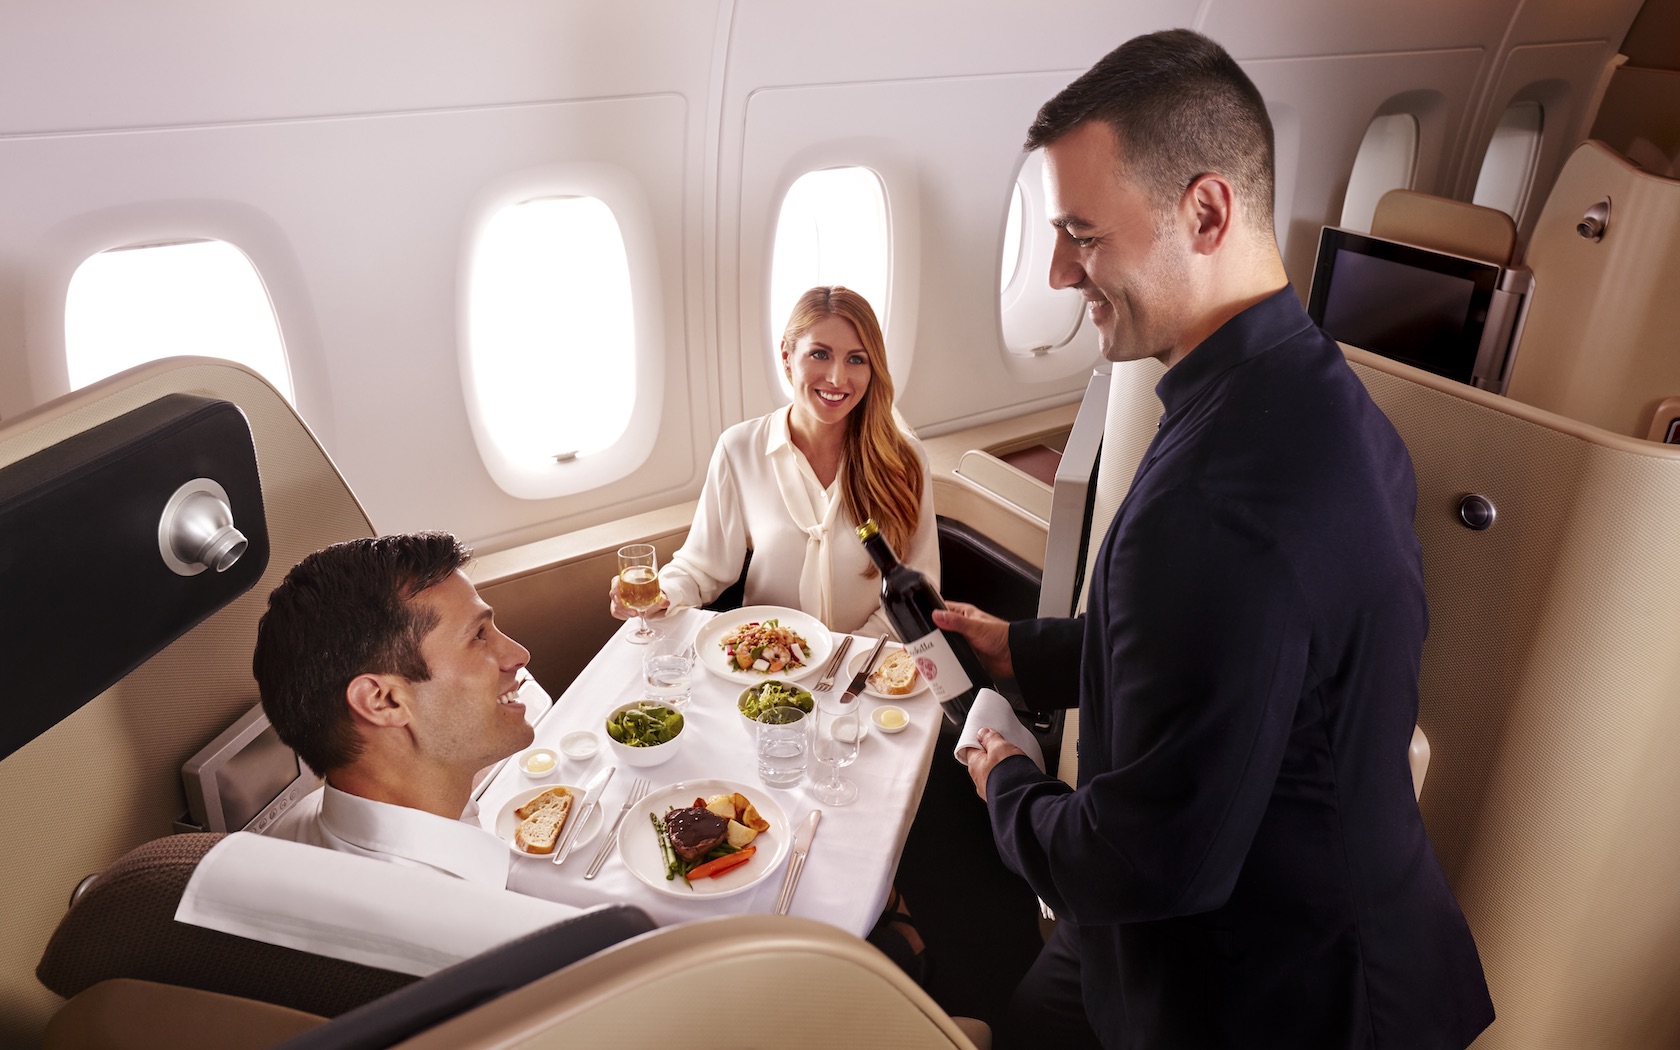 qantas airbnb first class business class cheap